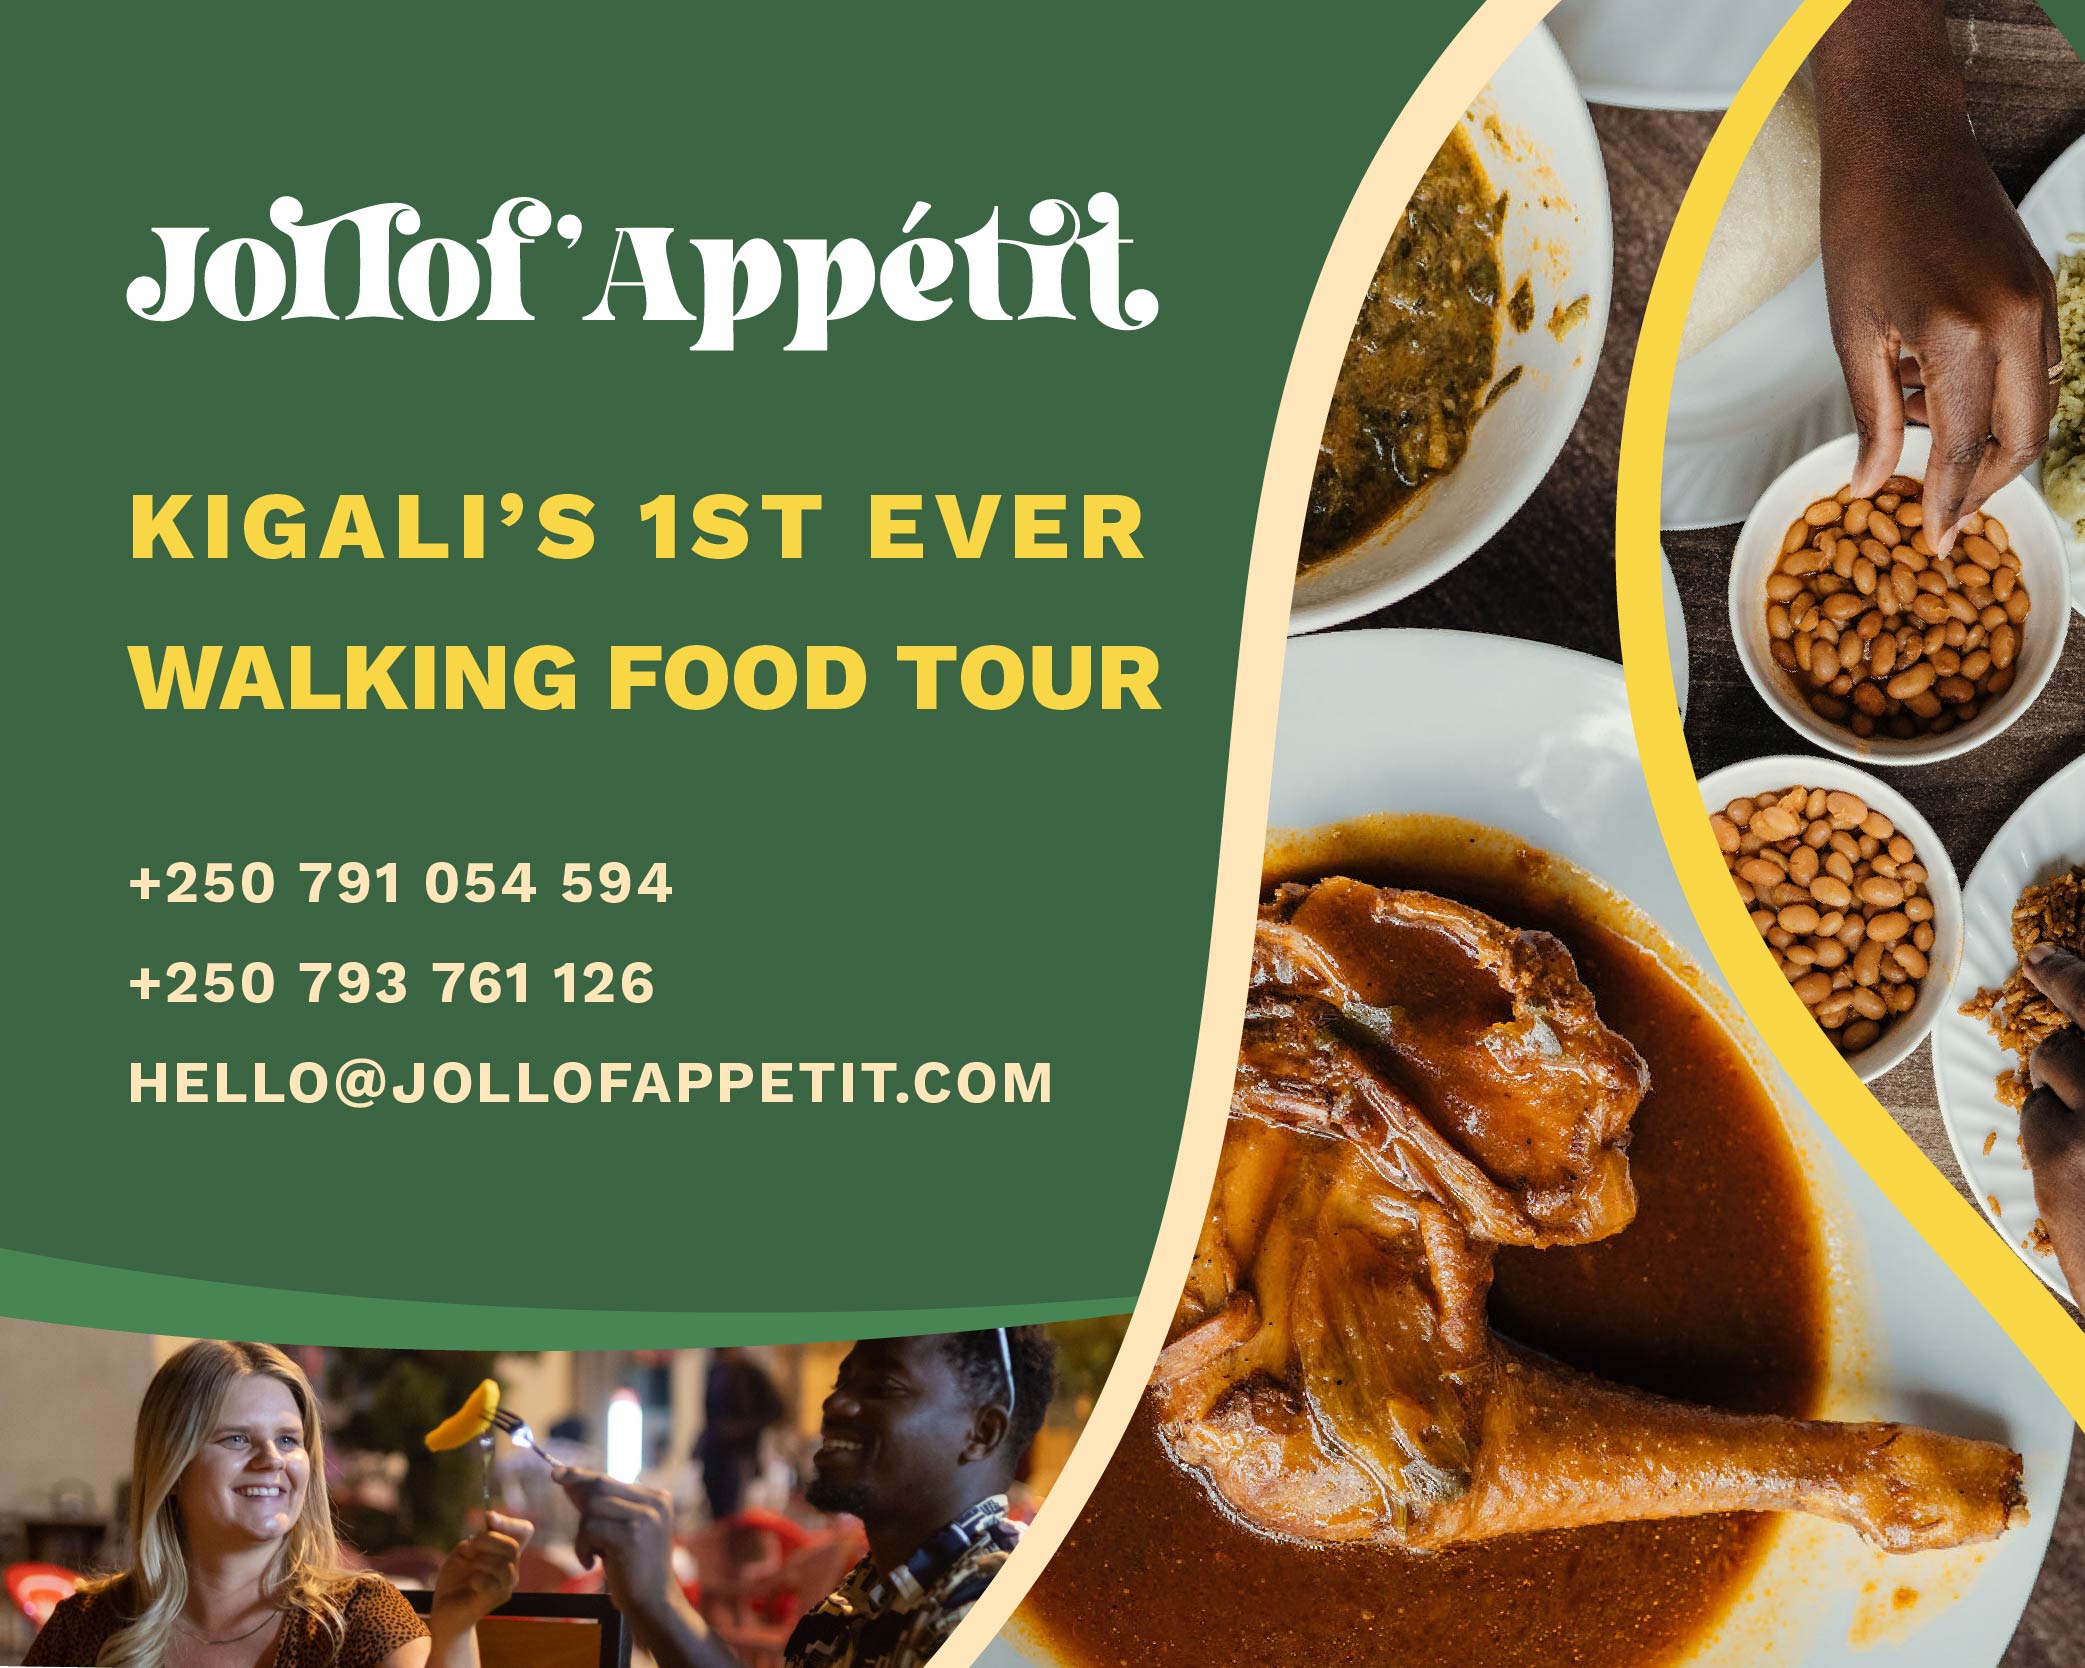 Jollof’Appétit